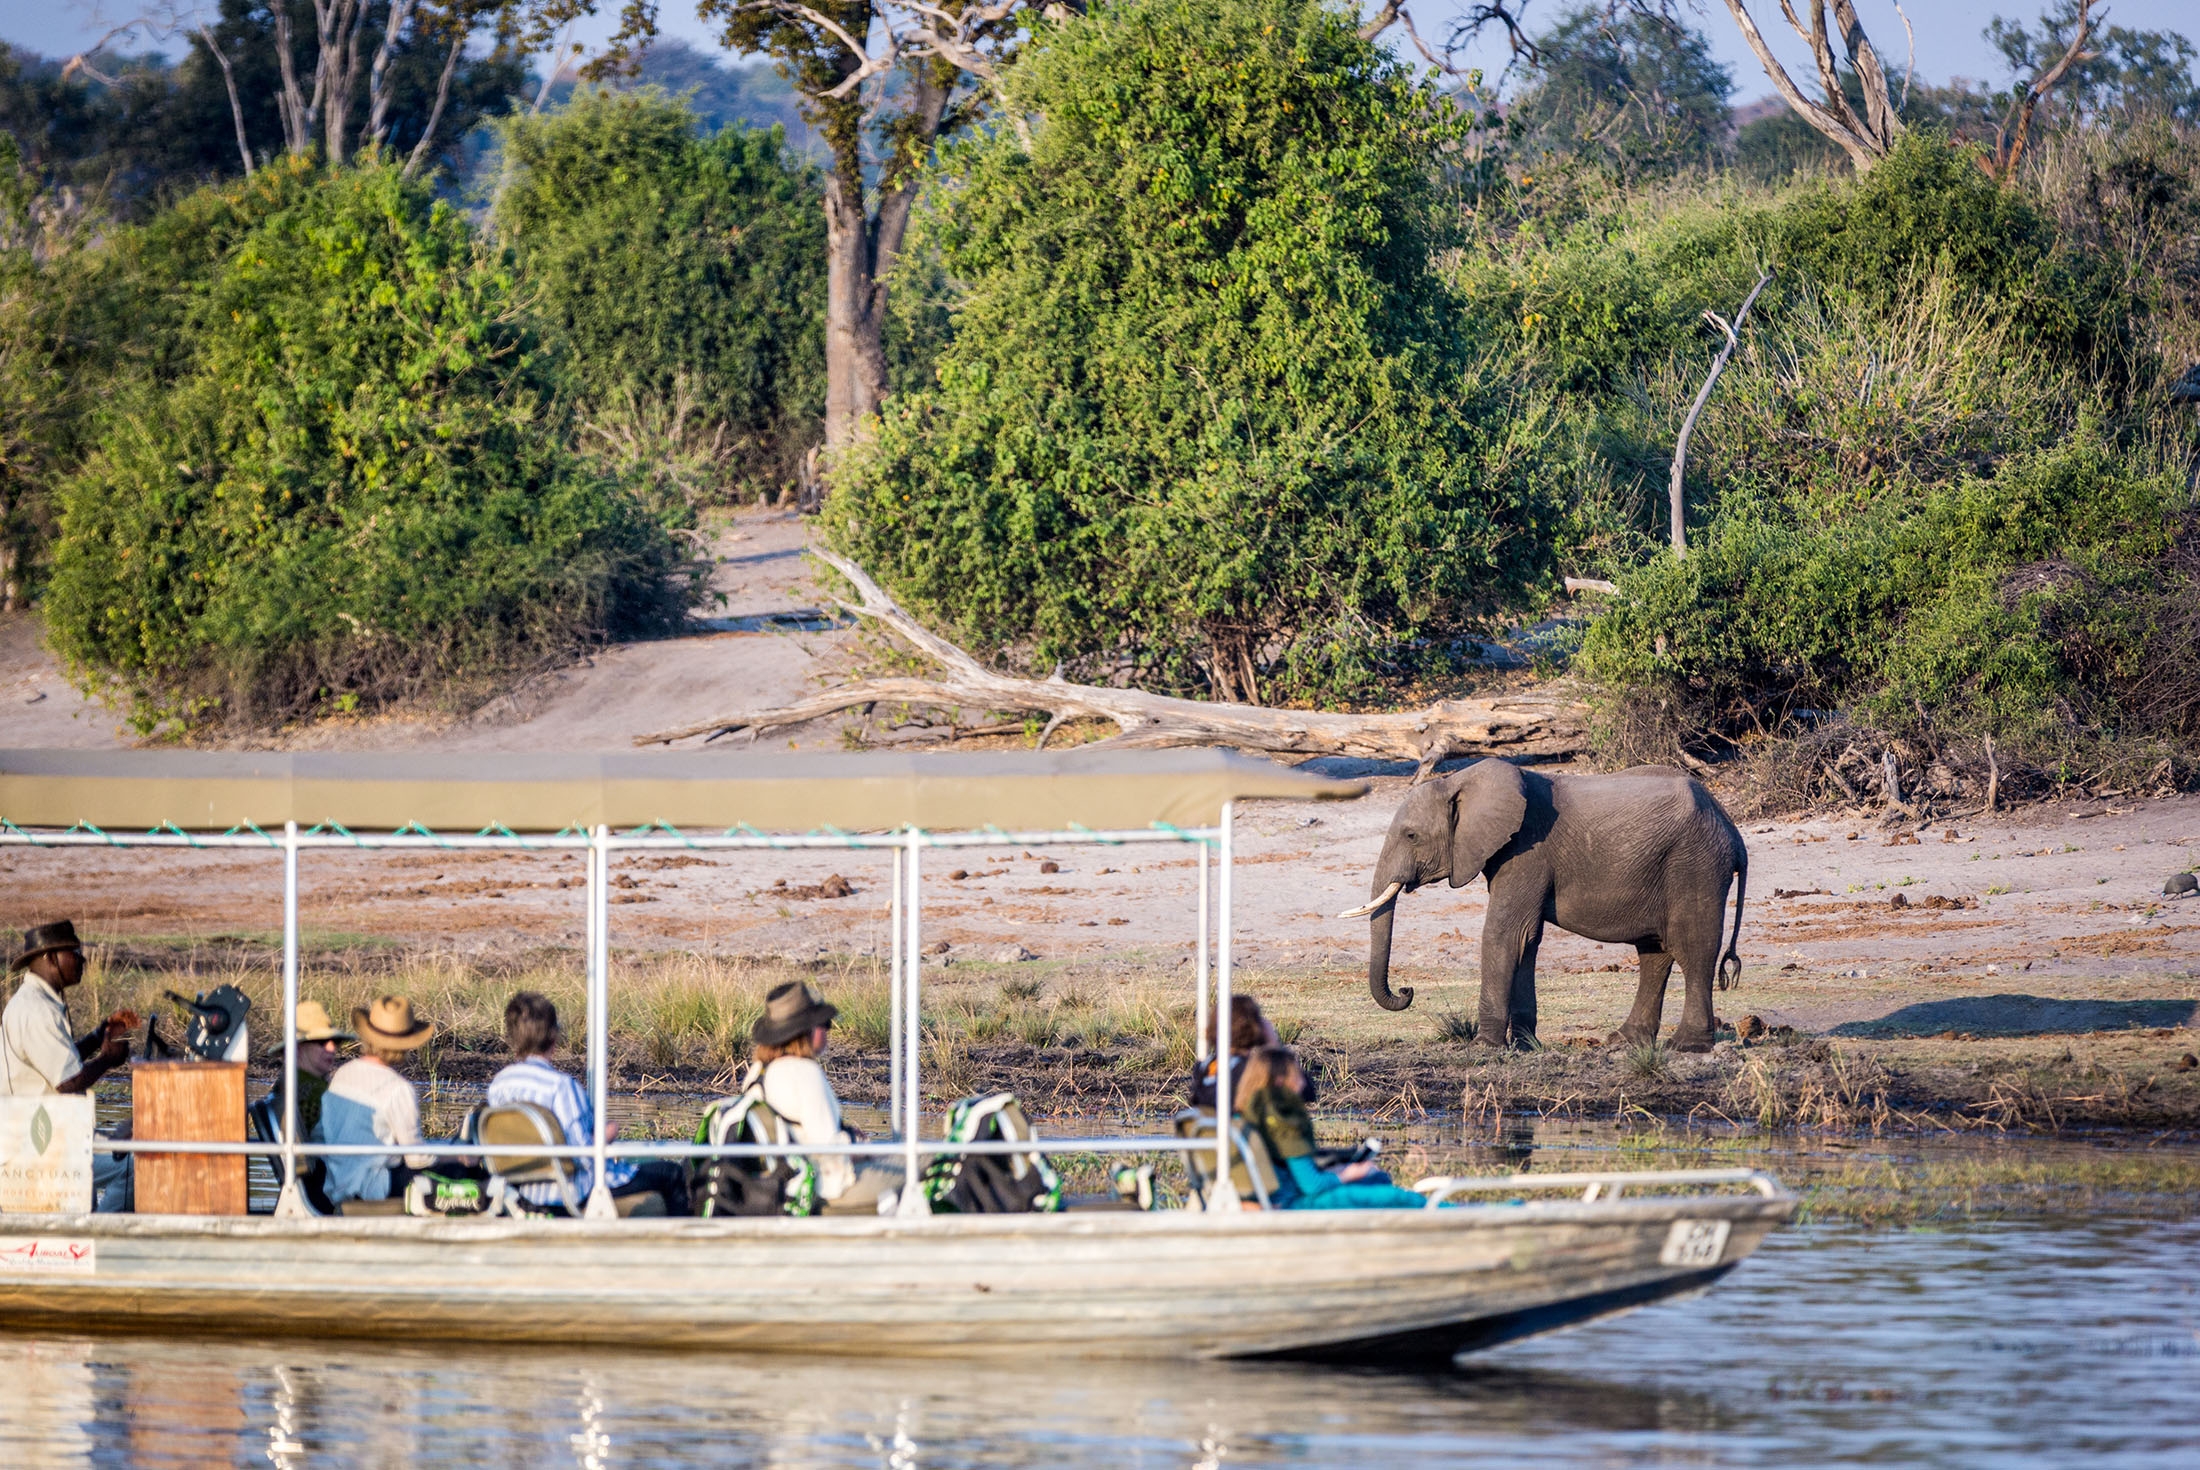 Elephant spotting while on Chobe National Park cruise, Botswana